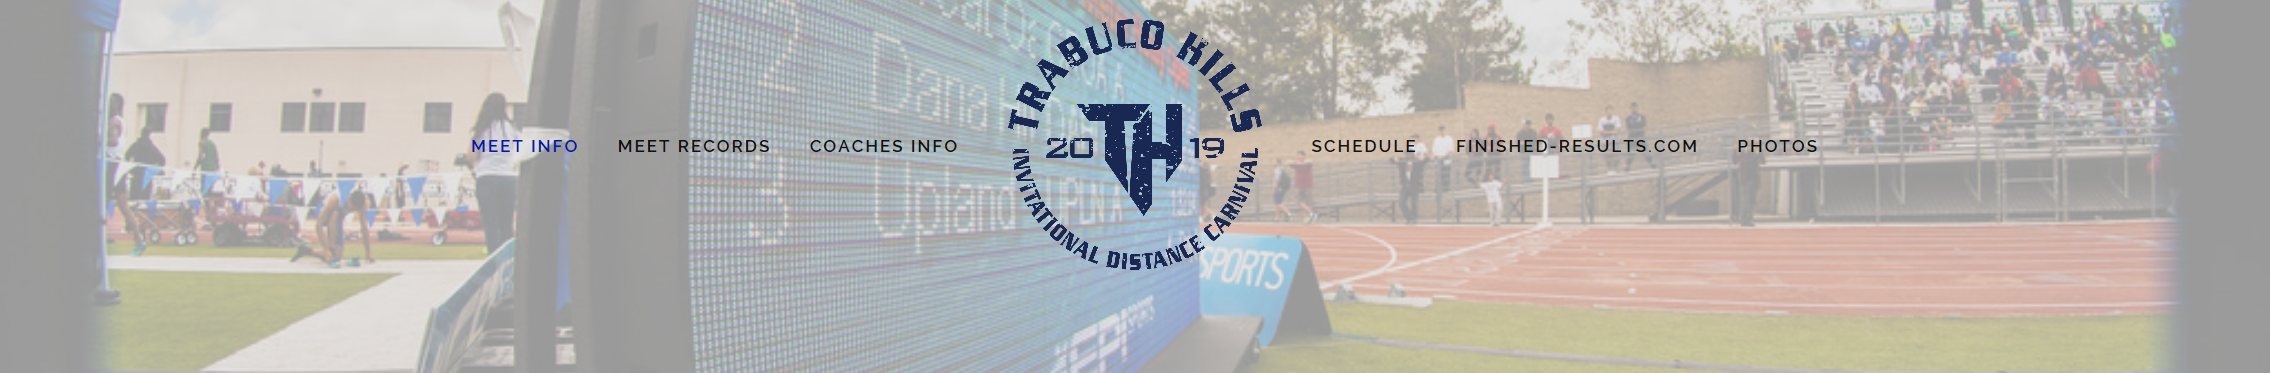 2019-03-29 - Page Banner - Trabuco Hills Invite